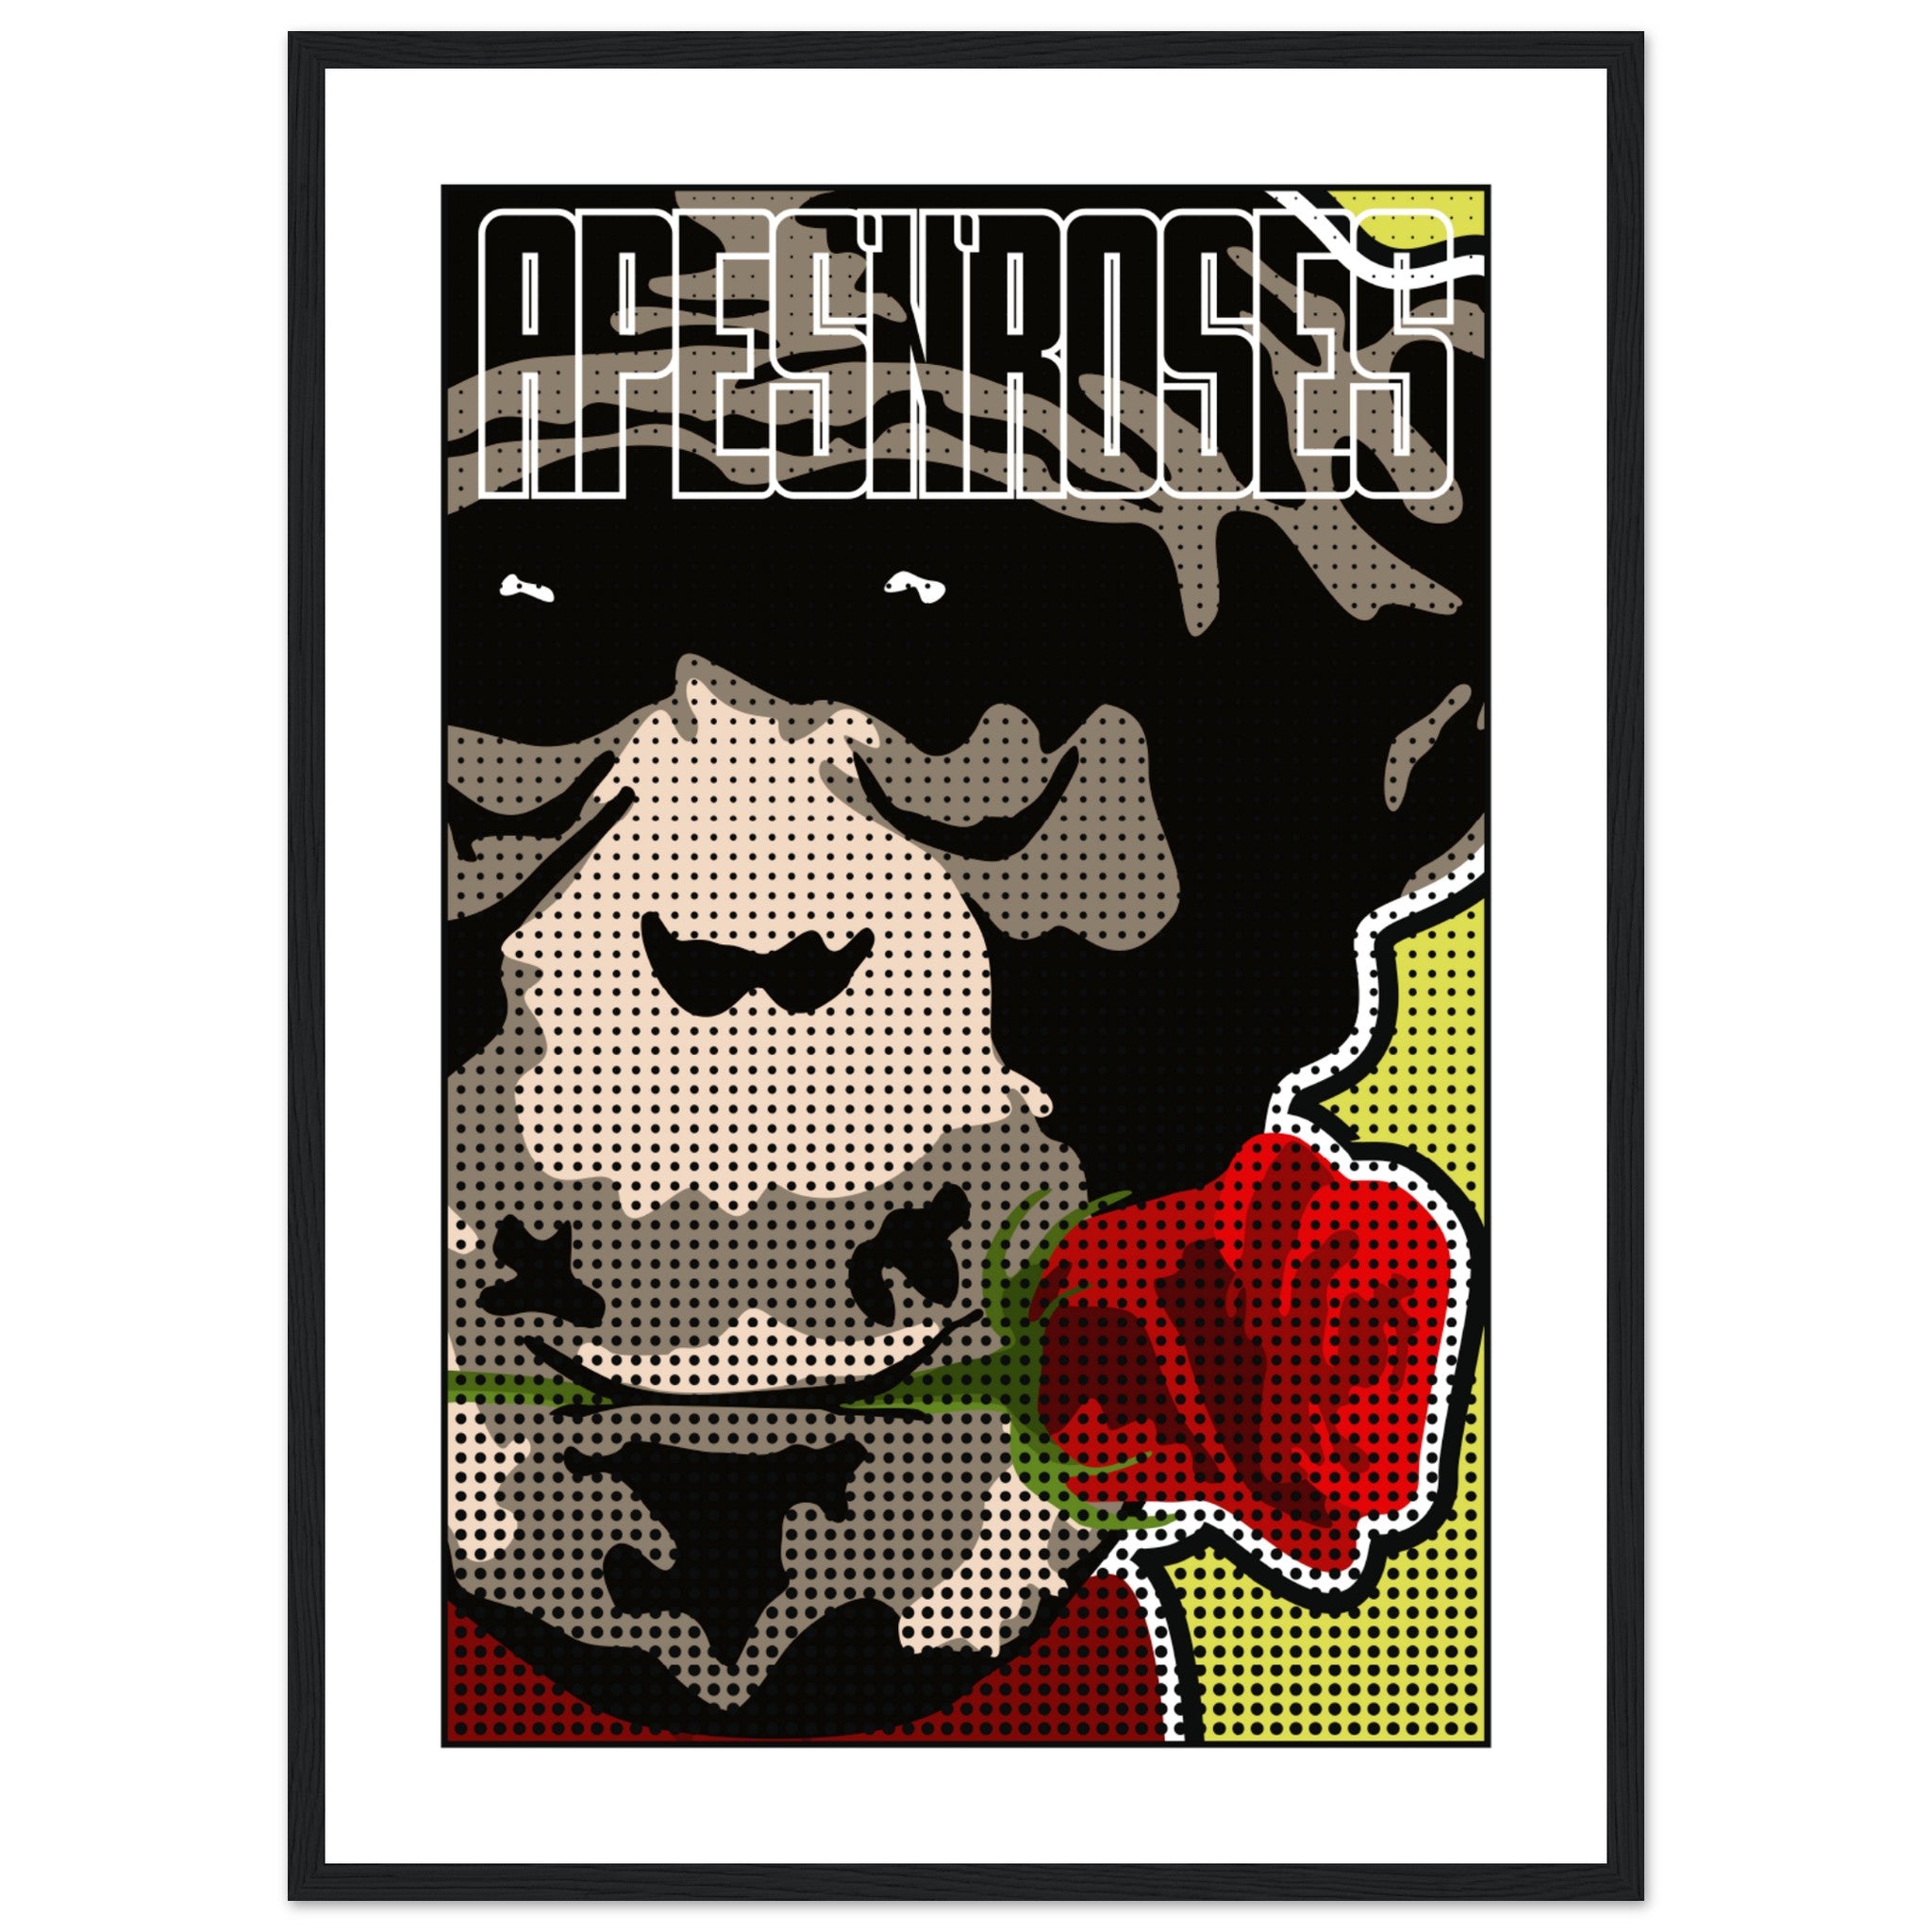 Apes N Roses 2 Poster